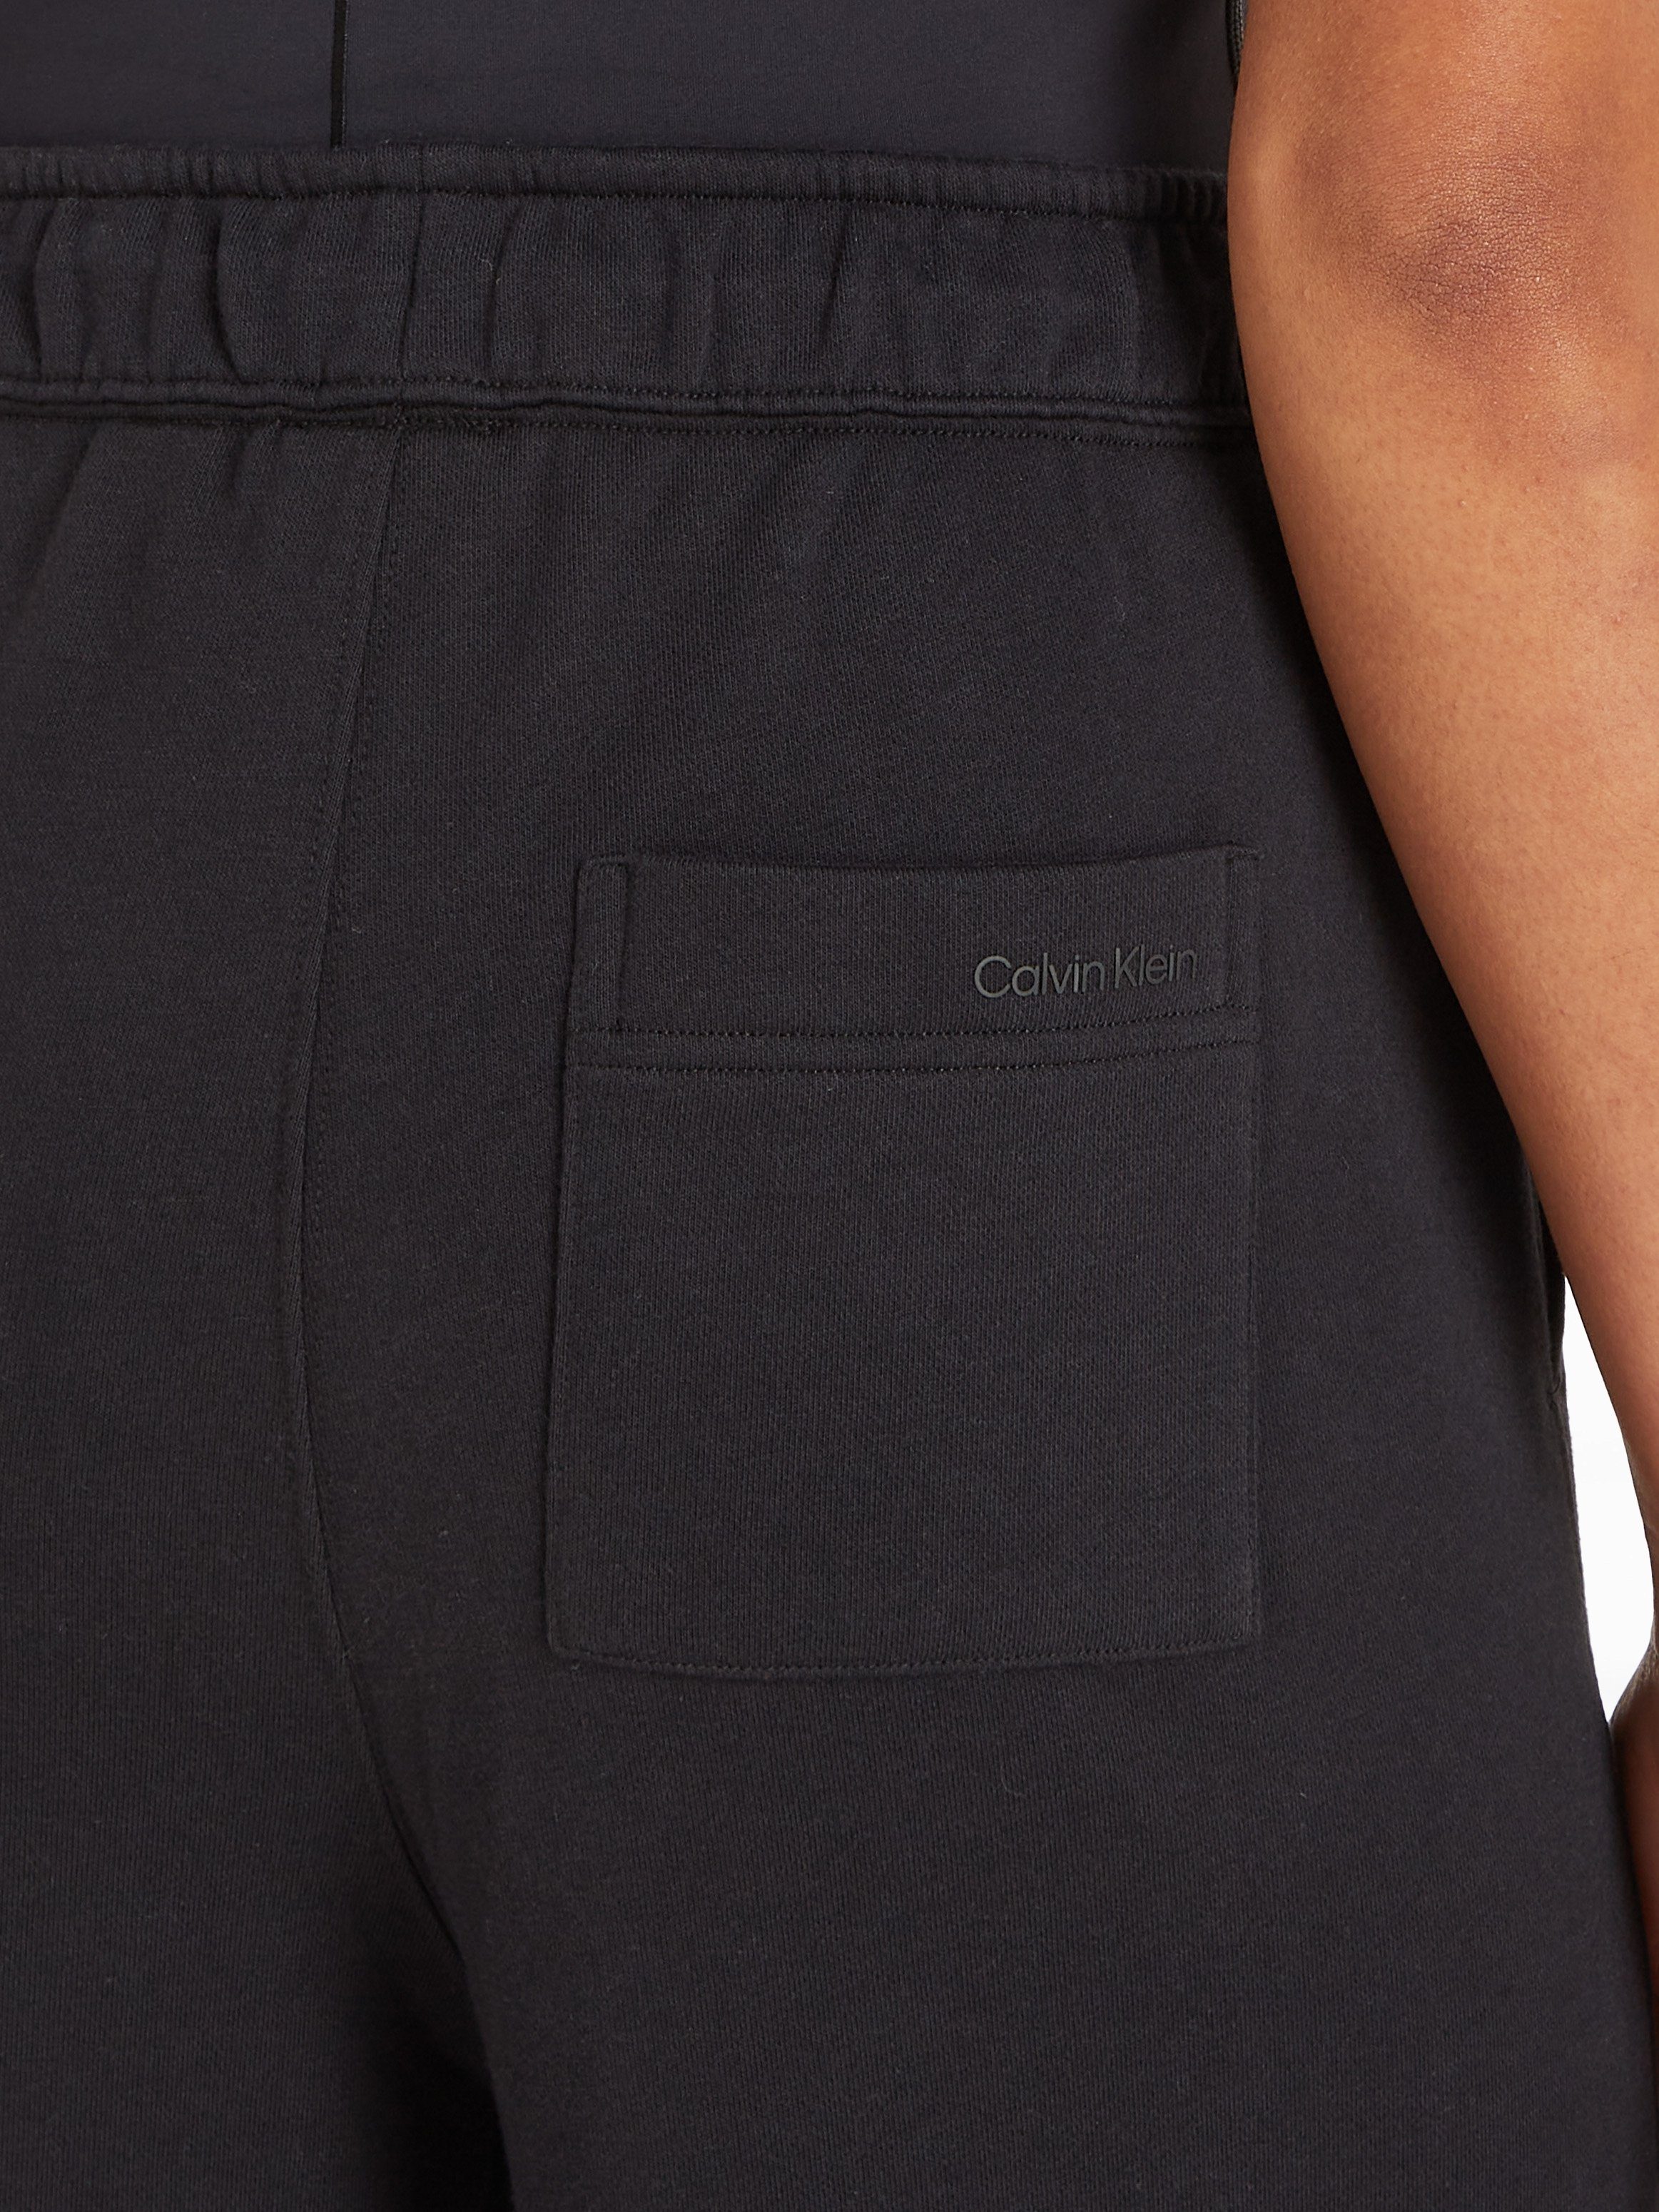 Calvin Klein Sport Jogginghose PW Leg Pant - schwarz Wide